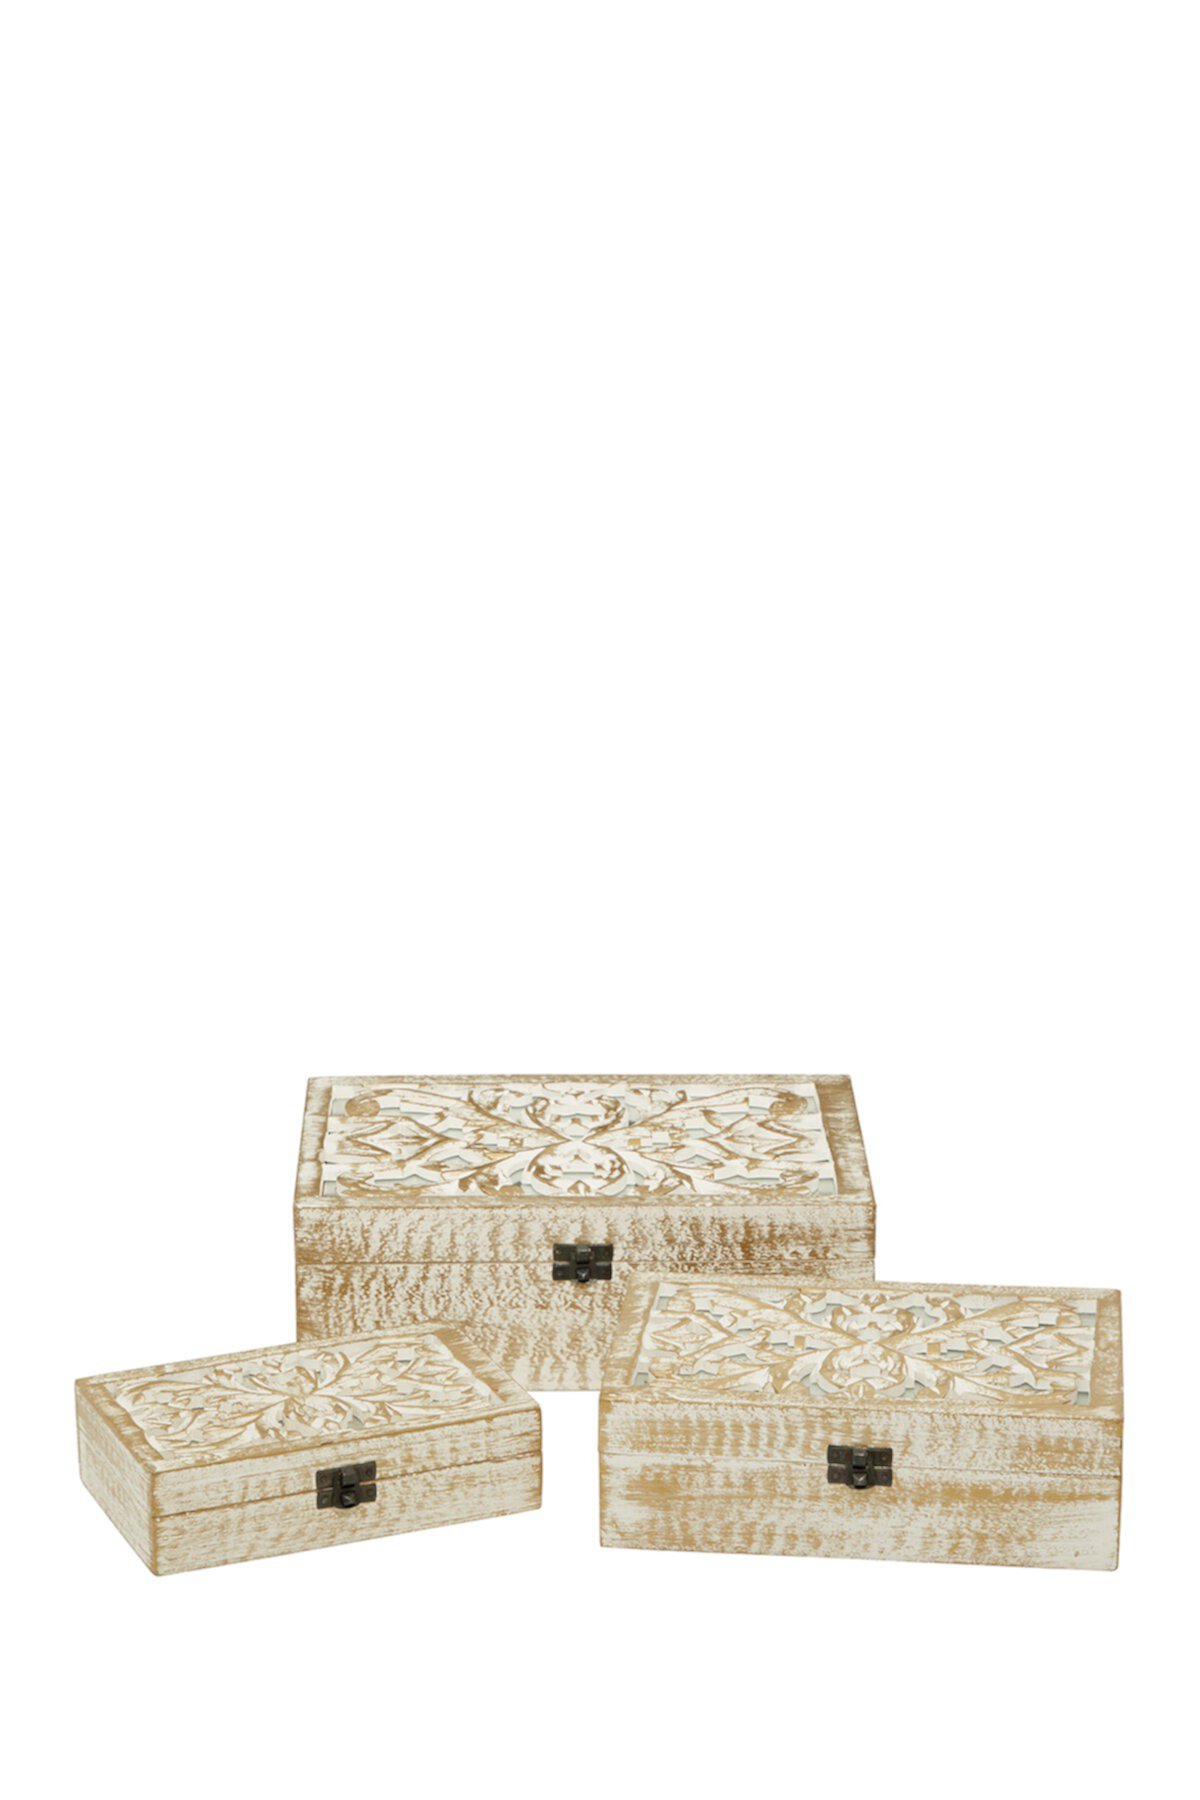 Прямоугольная белая деревянная декоративная шкатулка с филигранной отделкой из натурального дерева - набор из 3 шт. Willow Row